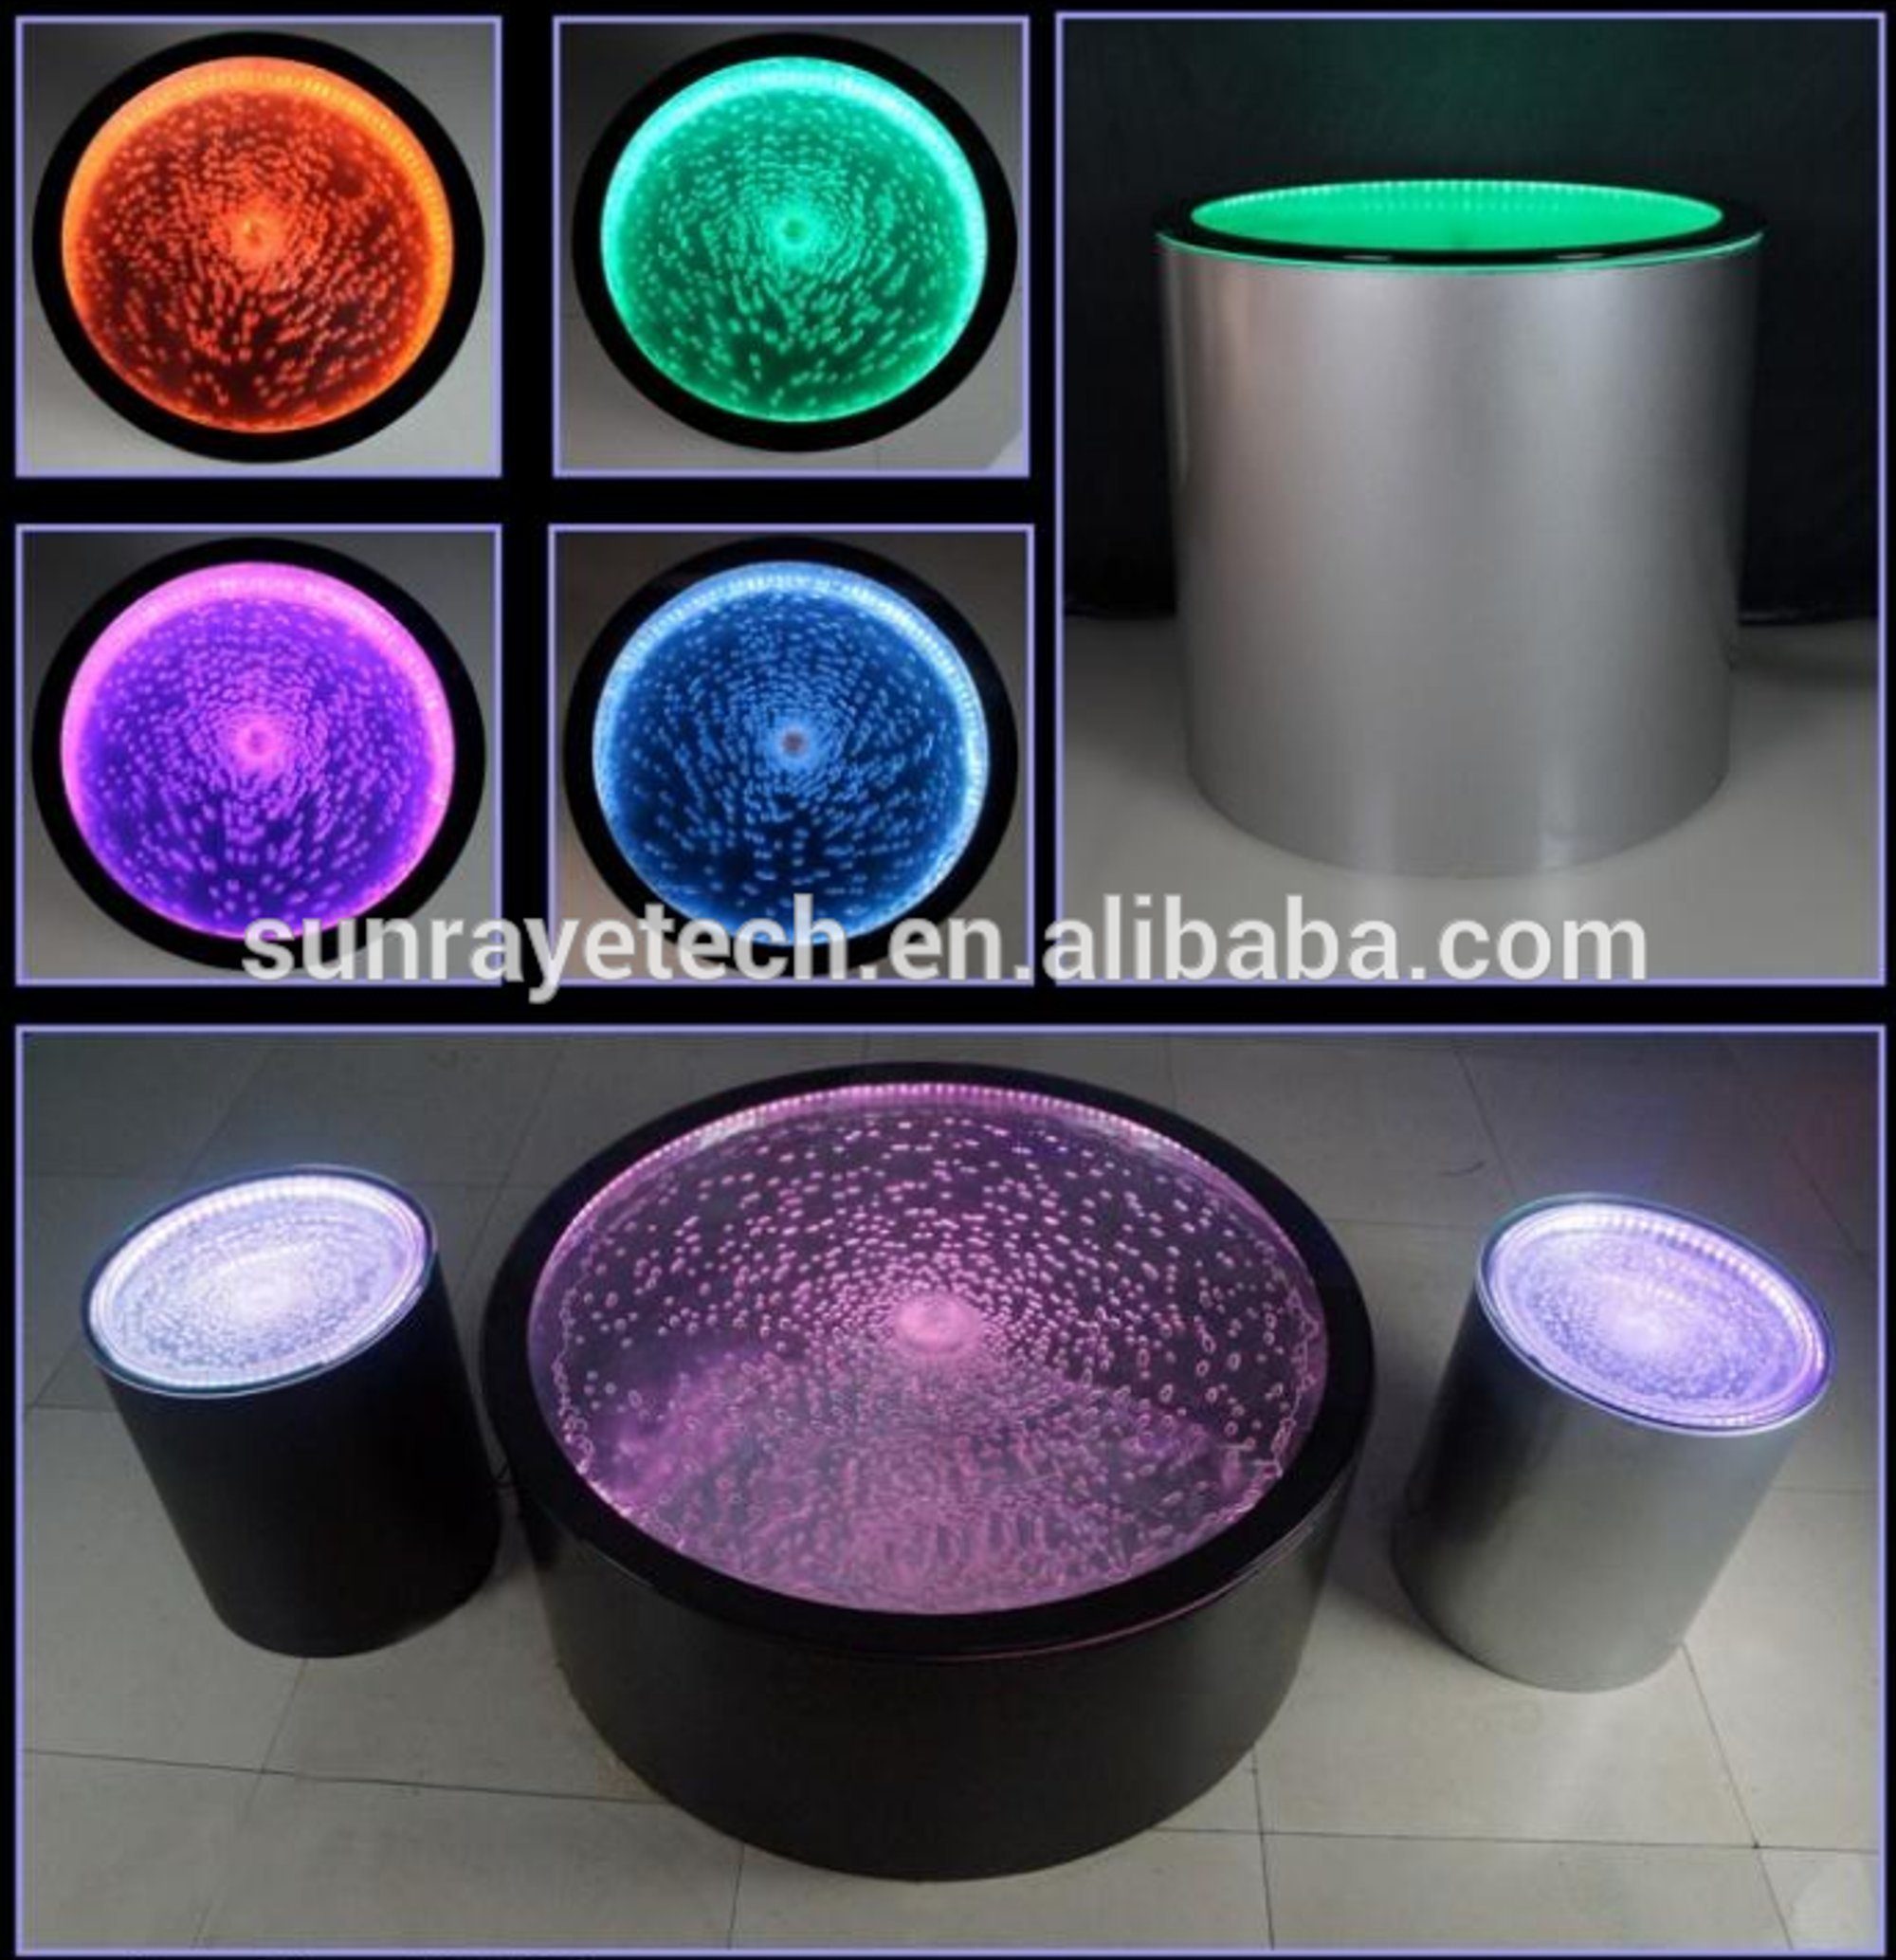 JVmoebel Couchtisch Design Tisch Europe Couchtisch Beleuchtet, Säulen Water In Wasser Tische Made LED